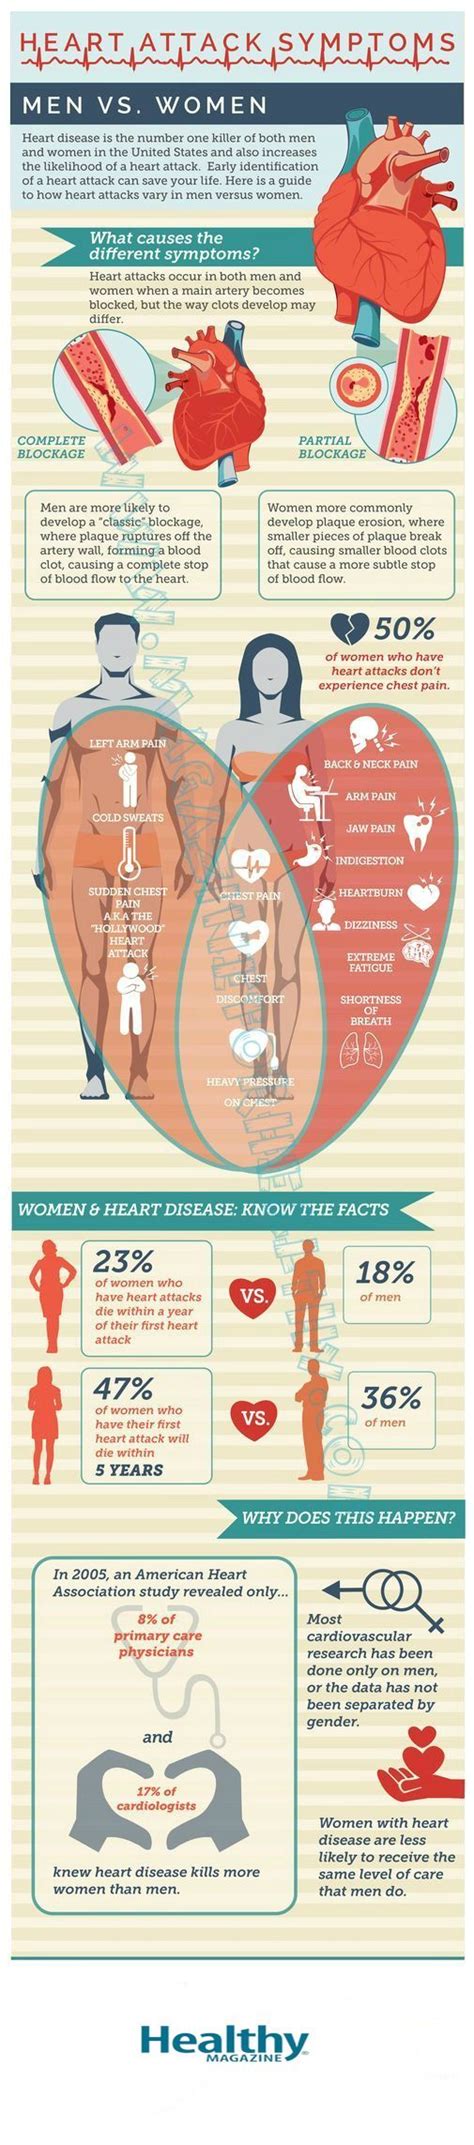 Healthcare Infographic Healthcare Infographic Heart Attack Symptoms